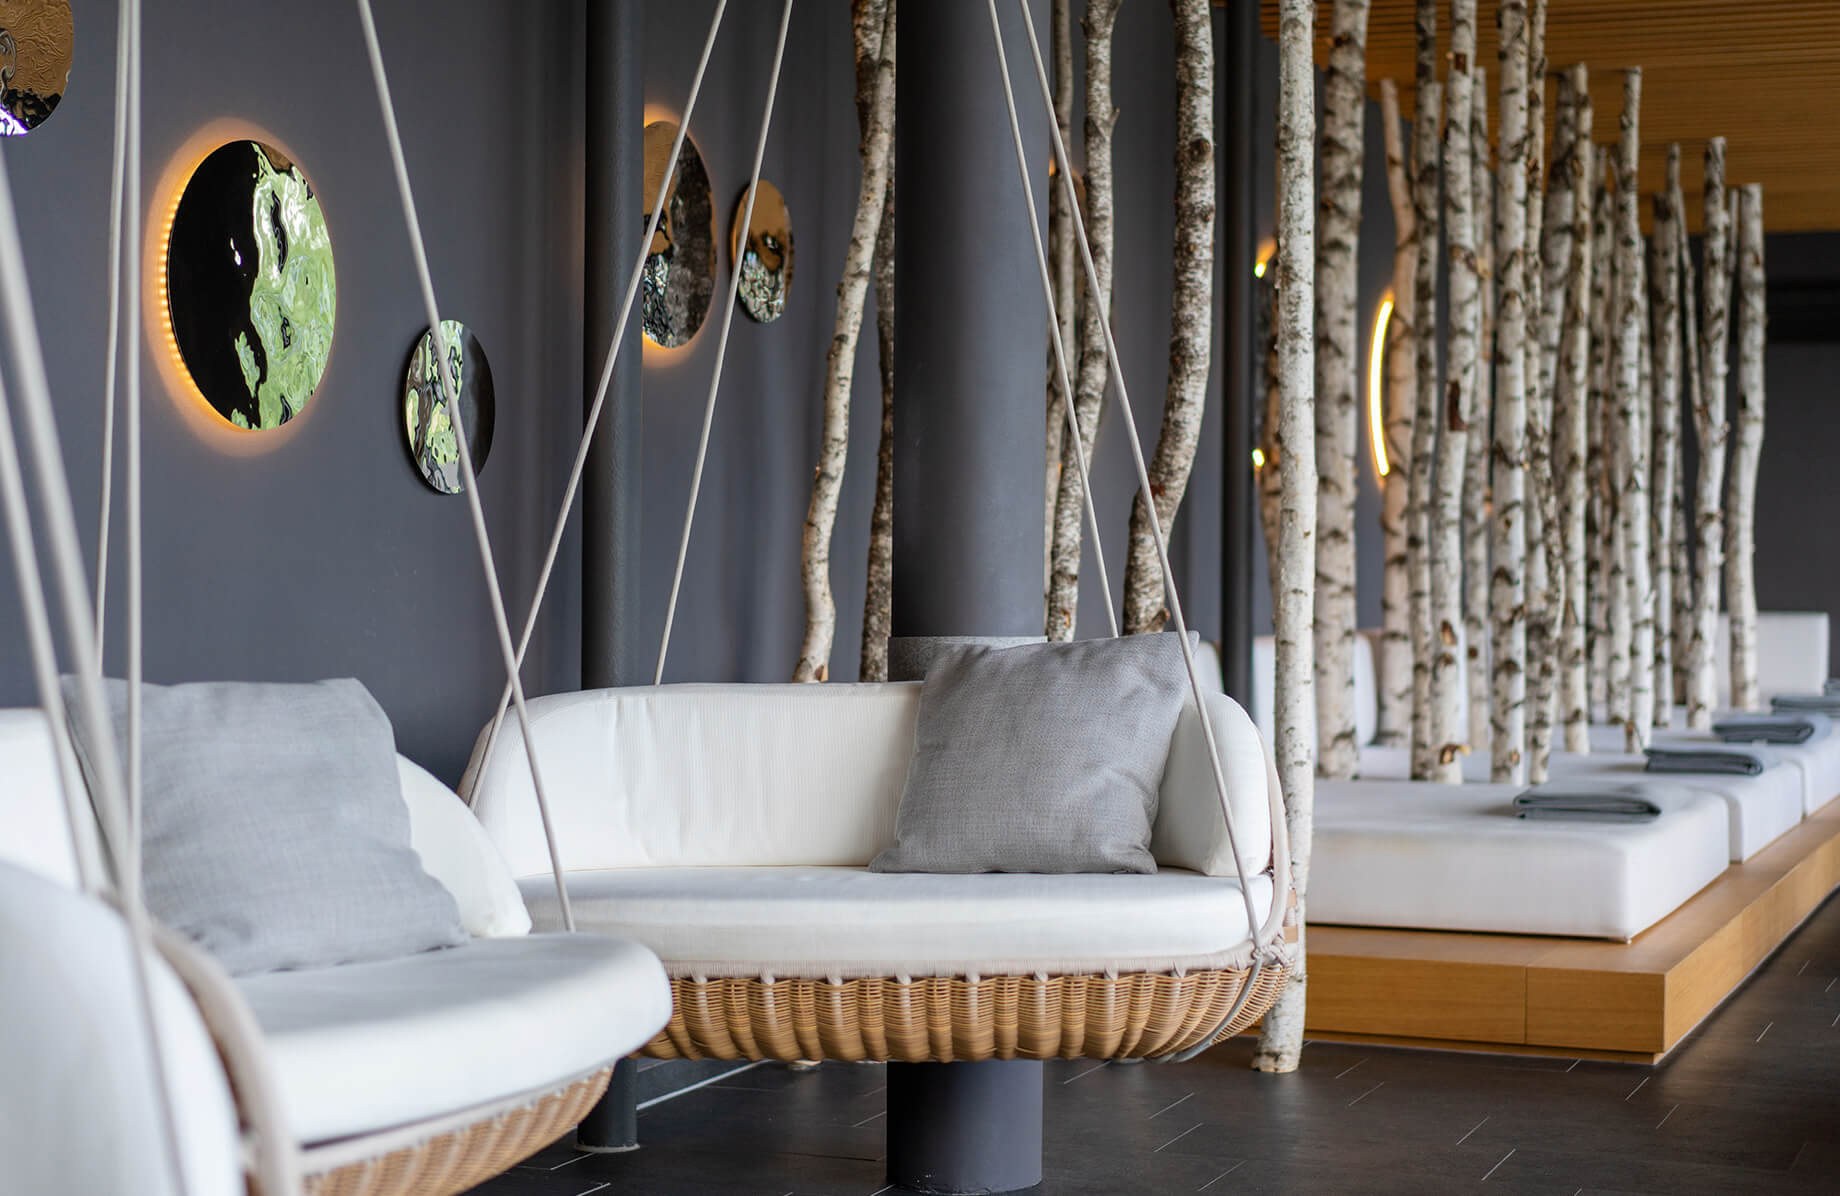 Aufnahme im Ruheraum des Spa-Bereichs im Hotel Das Tegernsee mit hellgrauen Wänden, mehreren Ruheliegen, dekorativen Birkenbaumstämmen dazwischen und im Vordergrund zwei Lounge-Hängesessel.